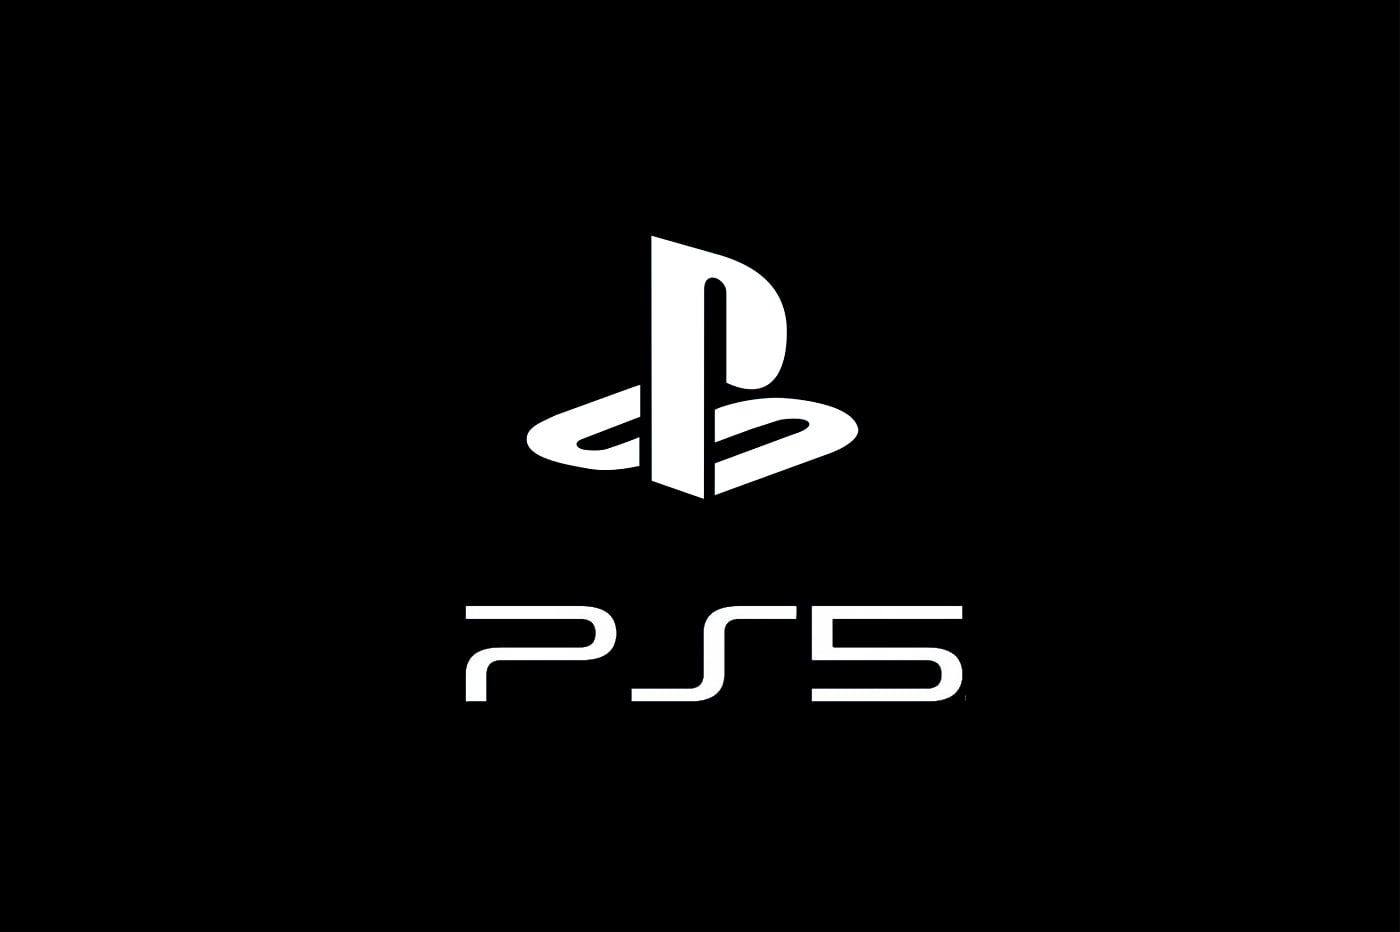 Ps5 não terá lançamento em outubro | b3282431 ps5 pas avant avril 2020 | married games anime | anime | ps5